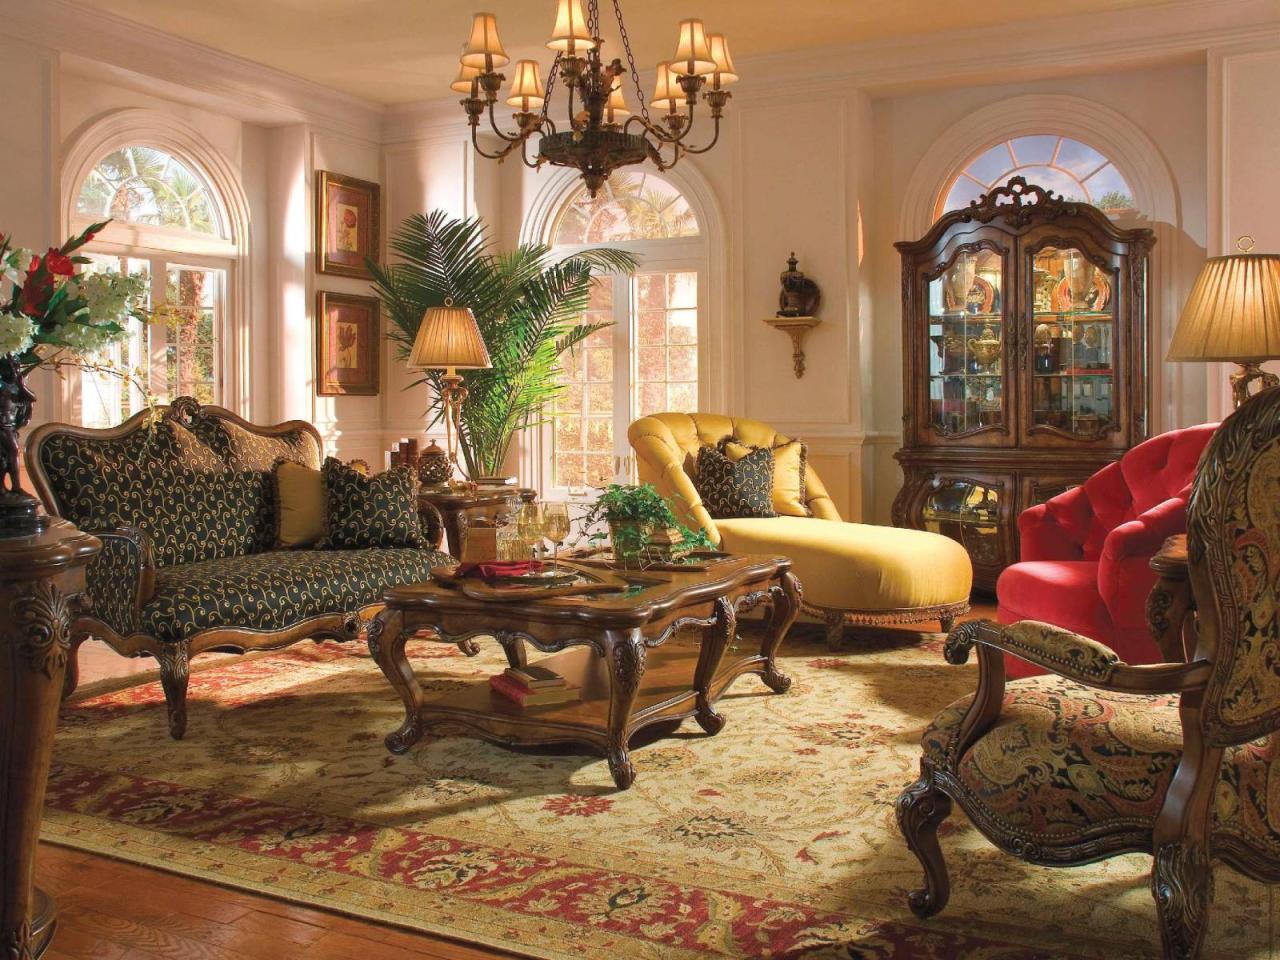 Xv interiores 7ca9 4d03 8d92 mantulgan mansiones elegantes victoriano rococo parlor hoomdesign parfums schloss